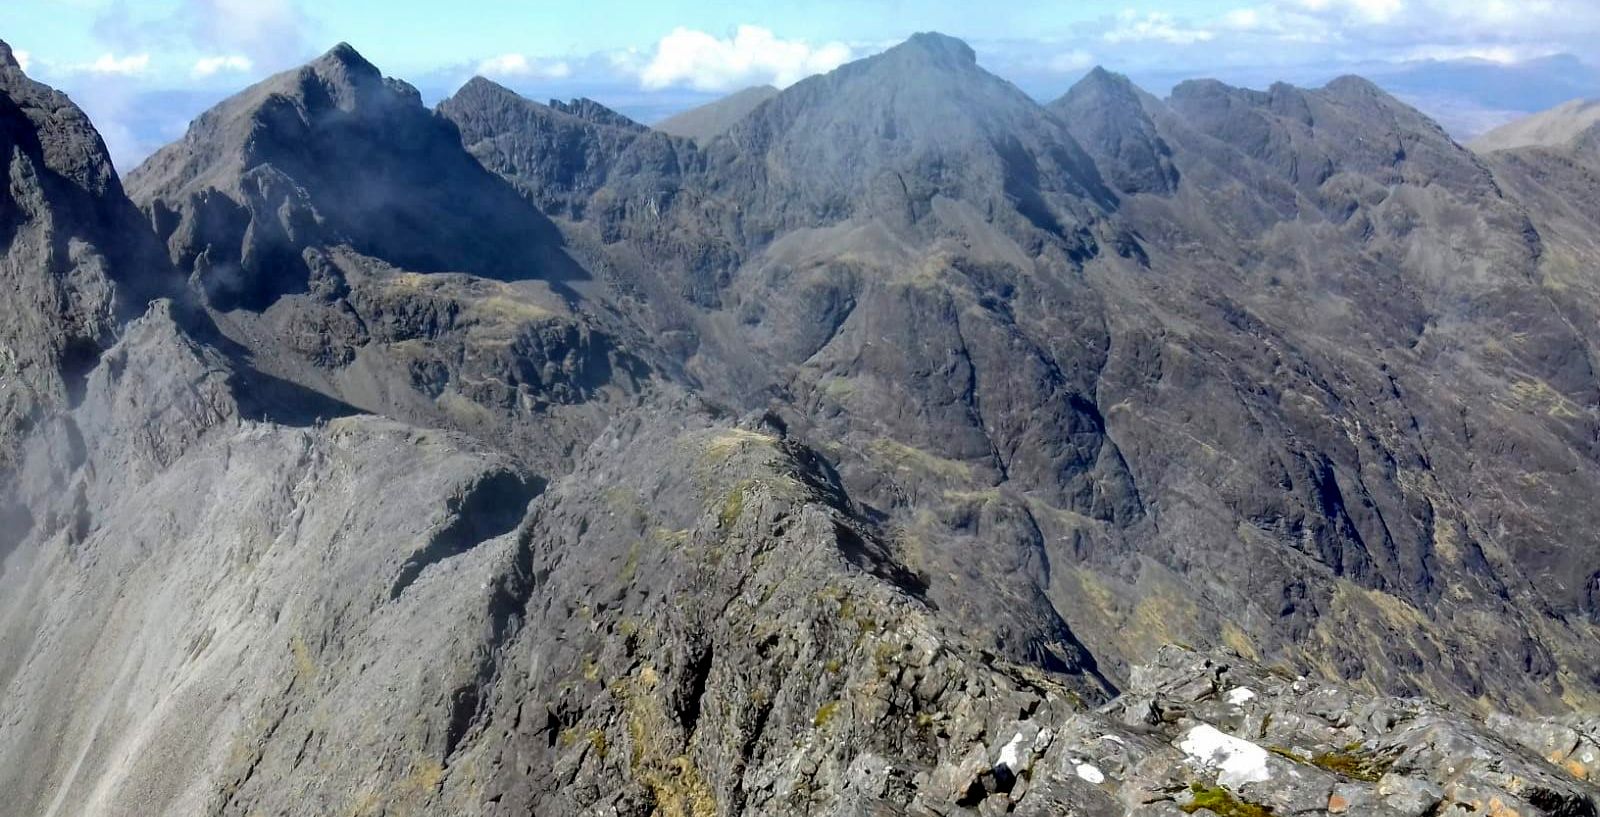 Skye Ridge - Sgurr nan Gillean and Blaven